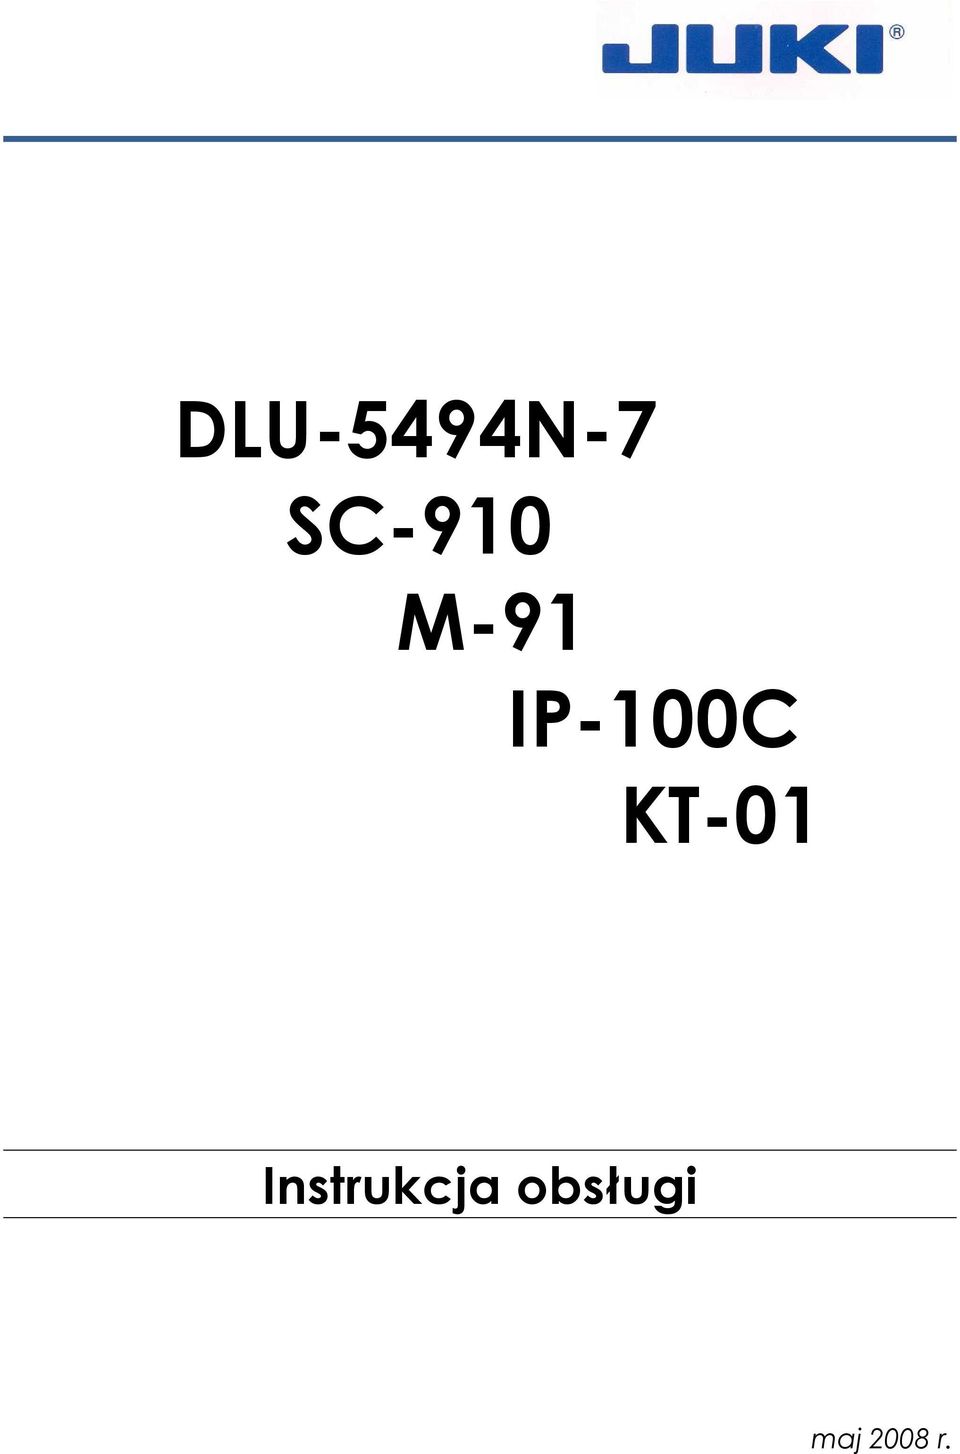 IP-100C KT-01